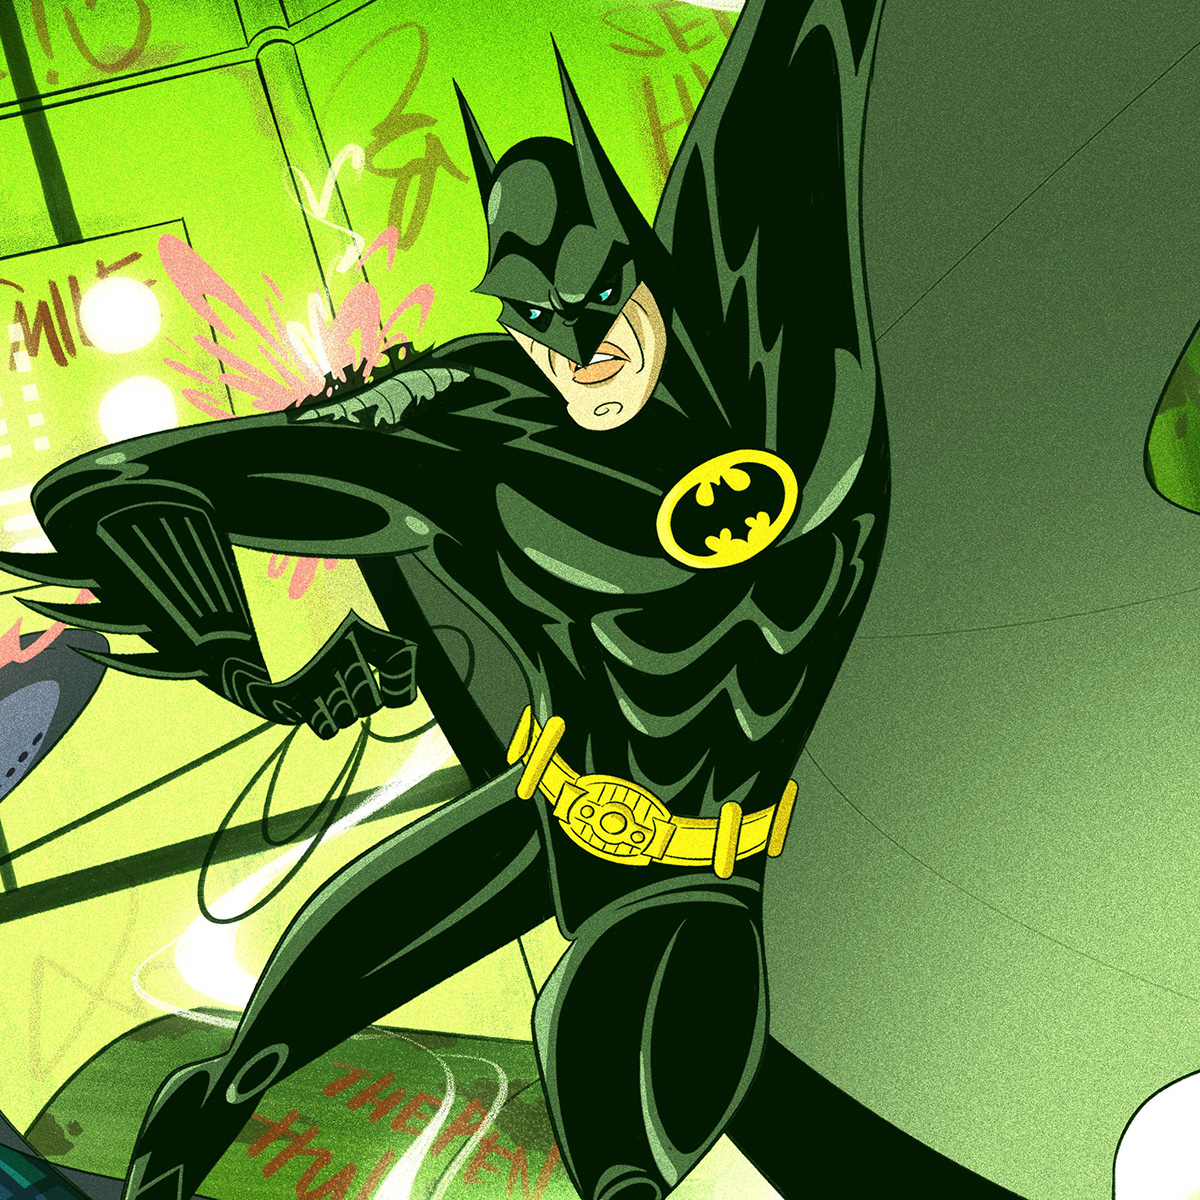 ILLUSTRATION  Digital Art  Character design  cartoon Drawing  batman Dc Comics SuperHero comics marvel